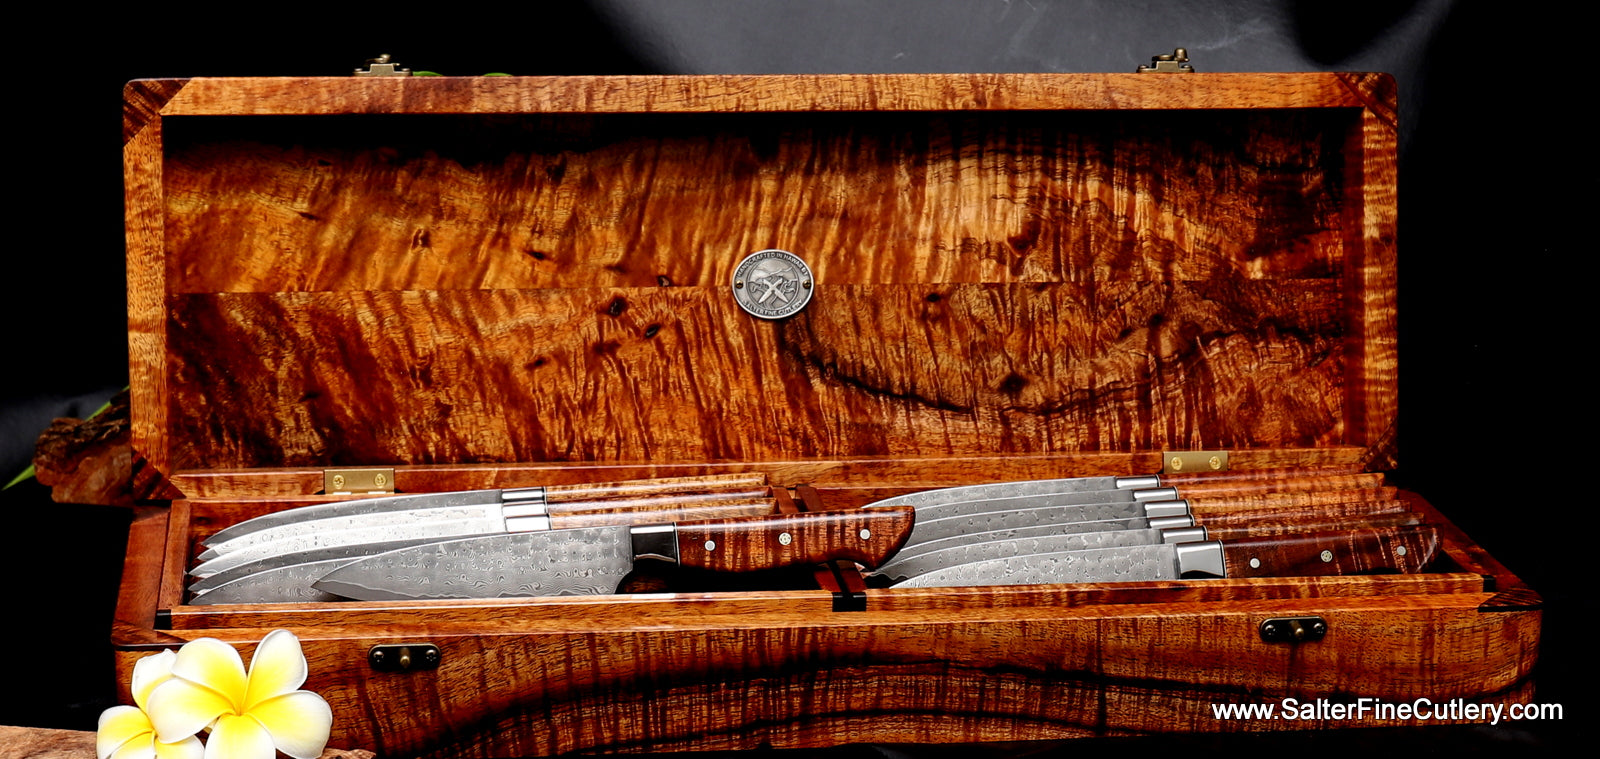 4 Piece Damascus Steak Knife Set With Wood Drawer Organizer Insert